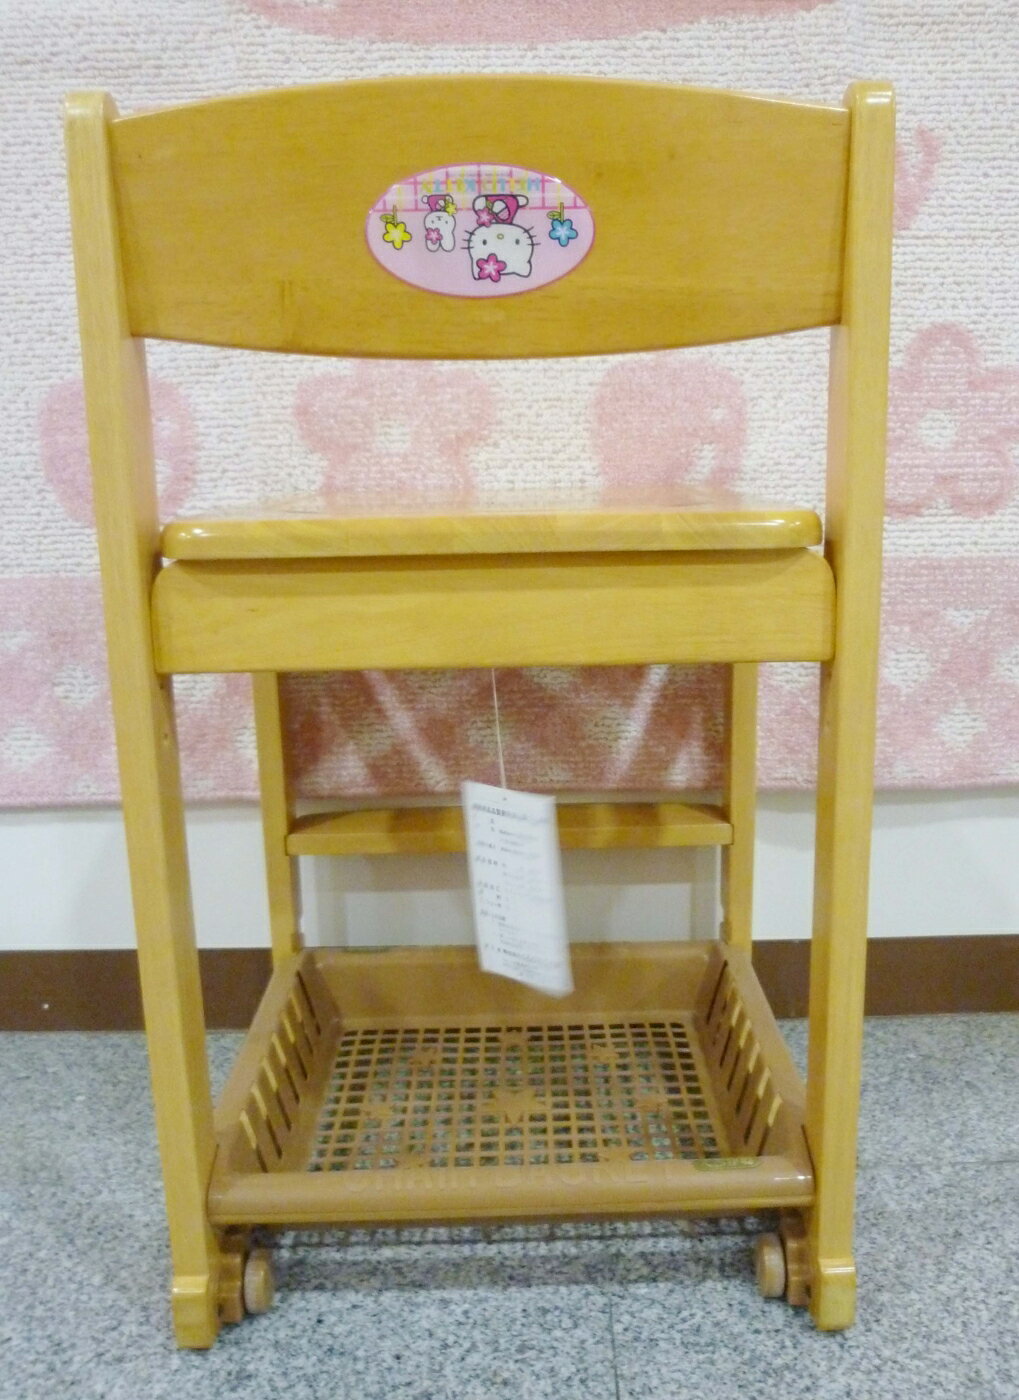 【震撼精品百貨】Hello Kitty 凱蒂貓 家具-椅子-天然木【共1款】*00804 震撼日式精品百貨